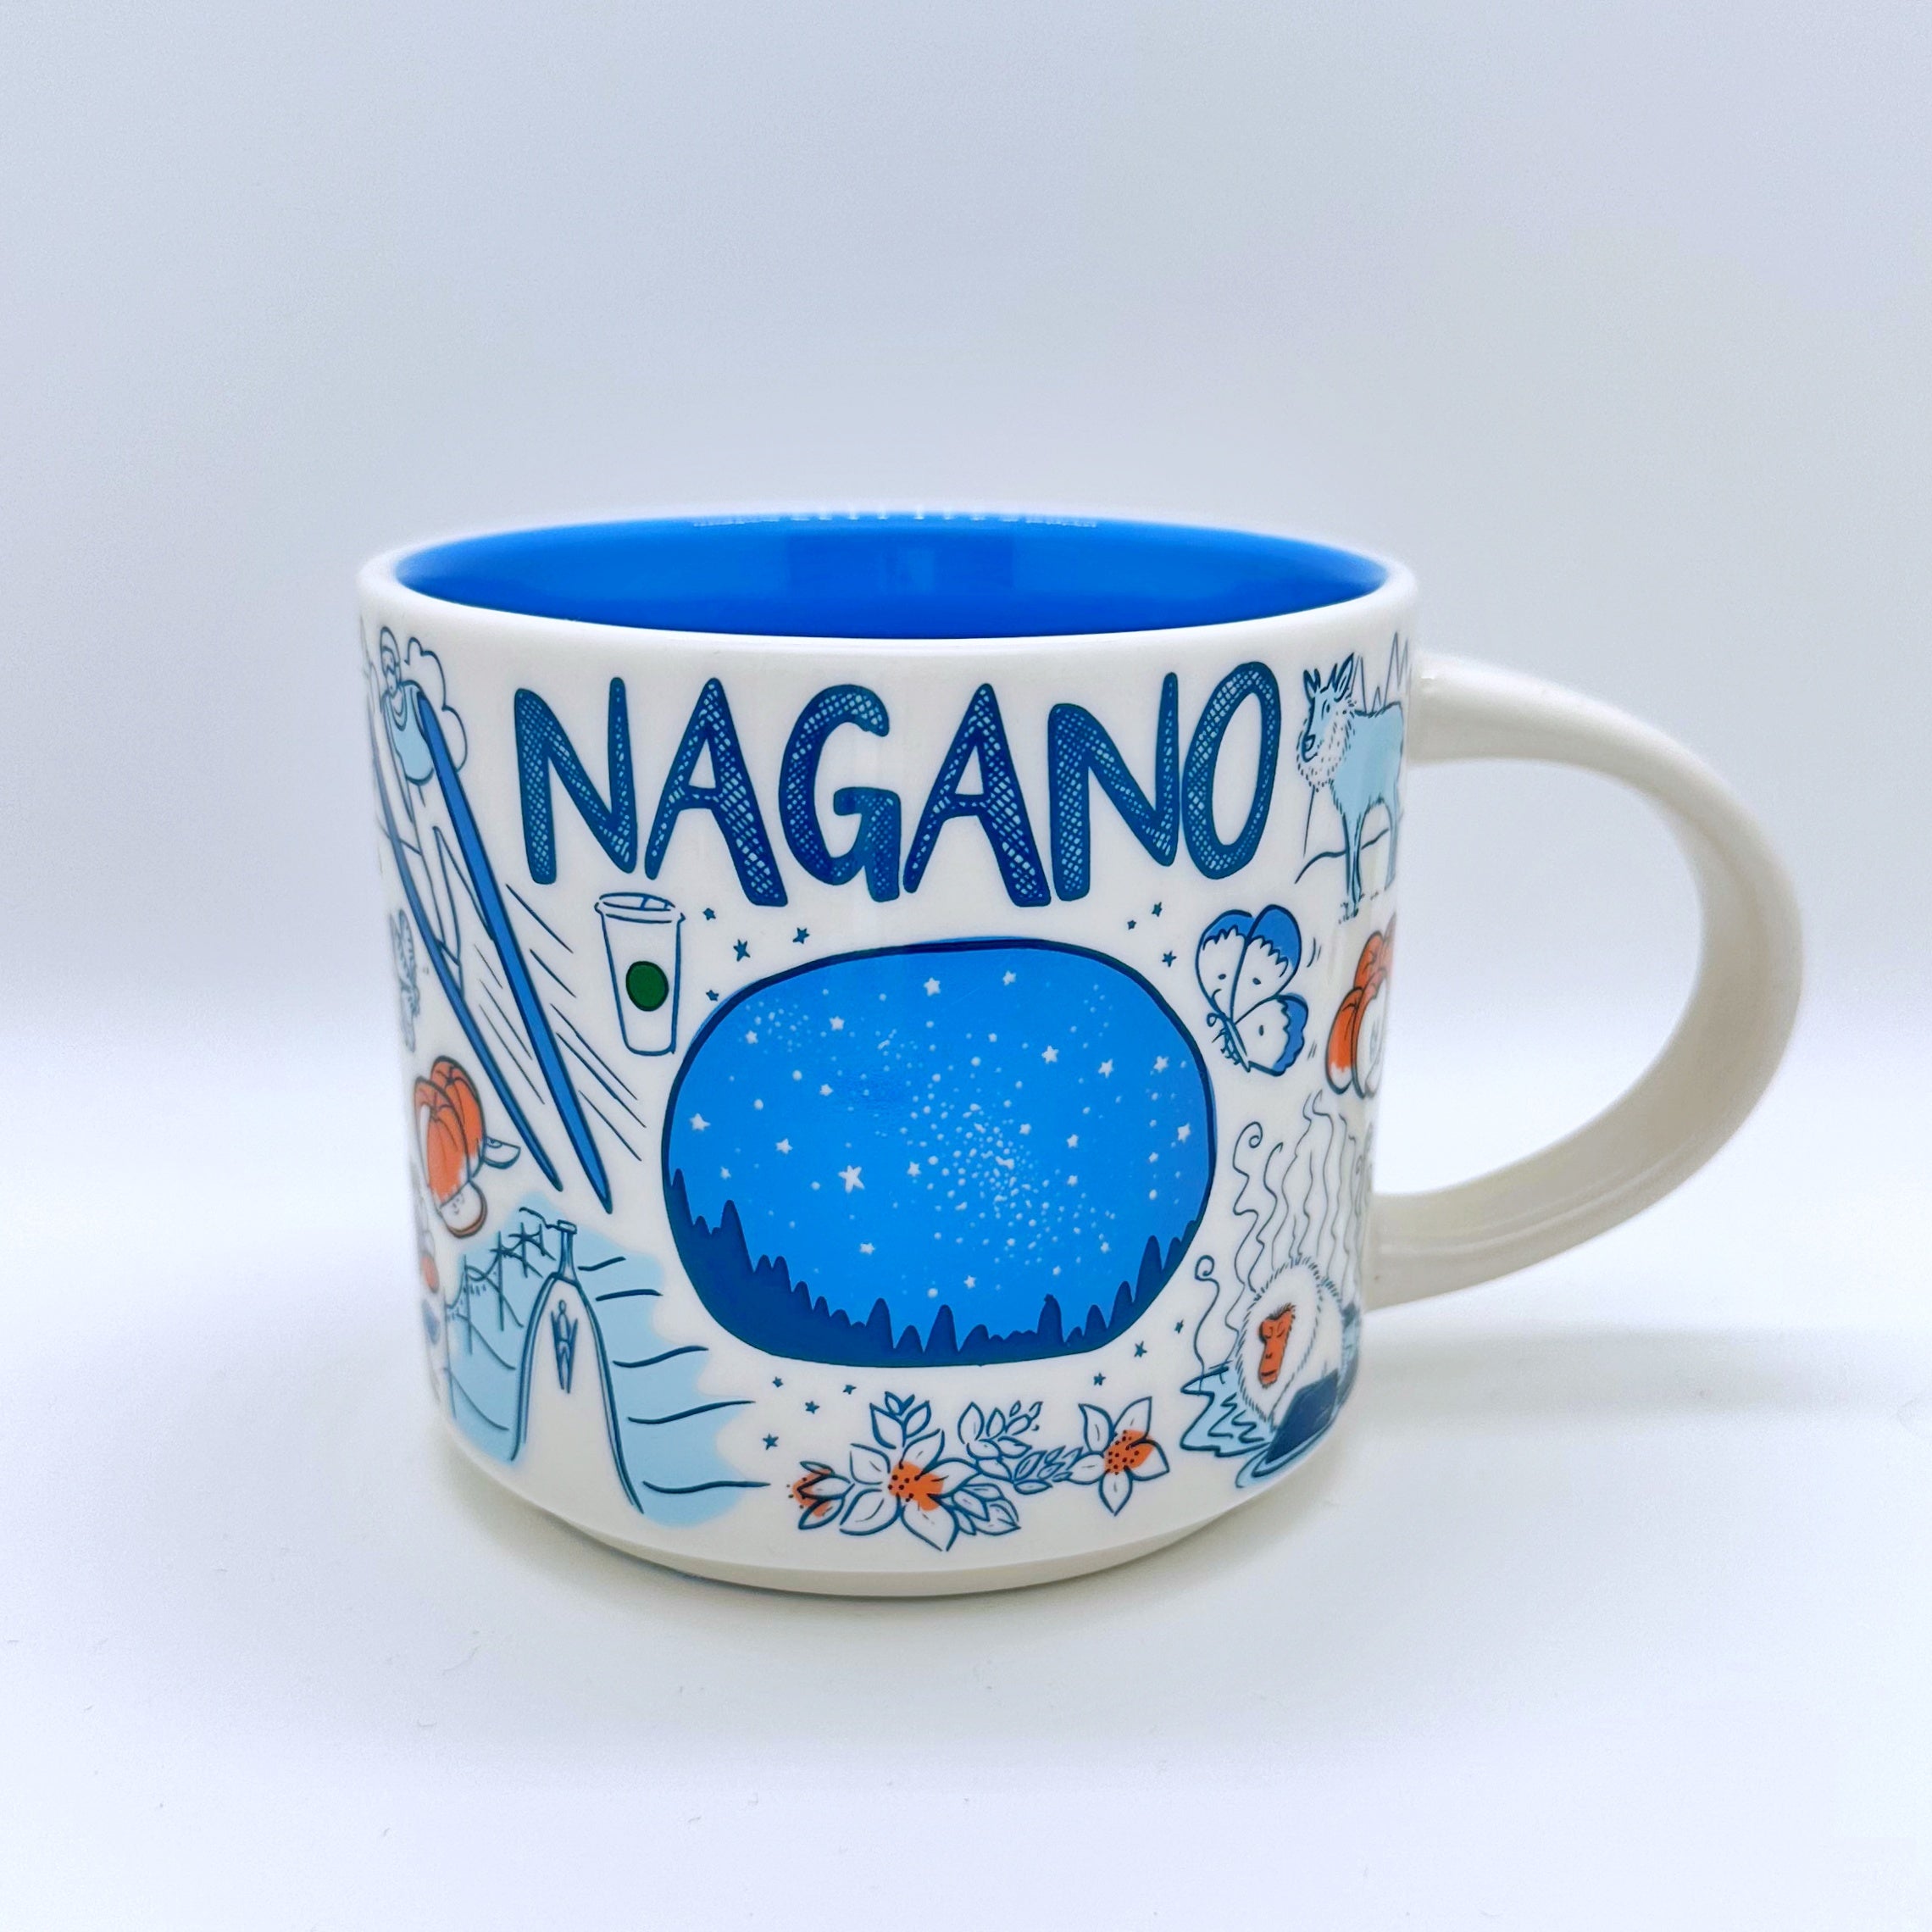 Nagano City Kaffee Tasse